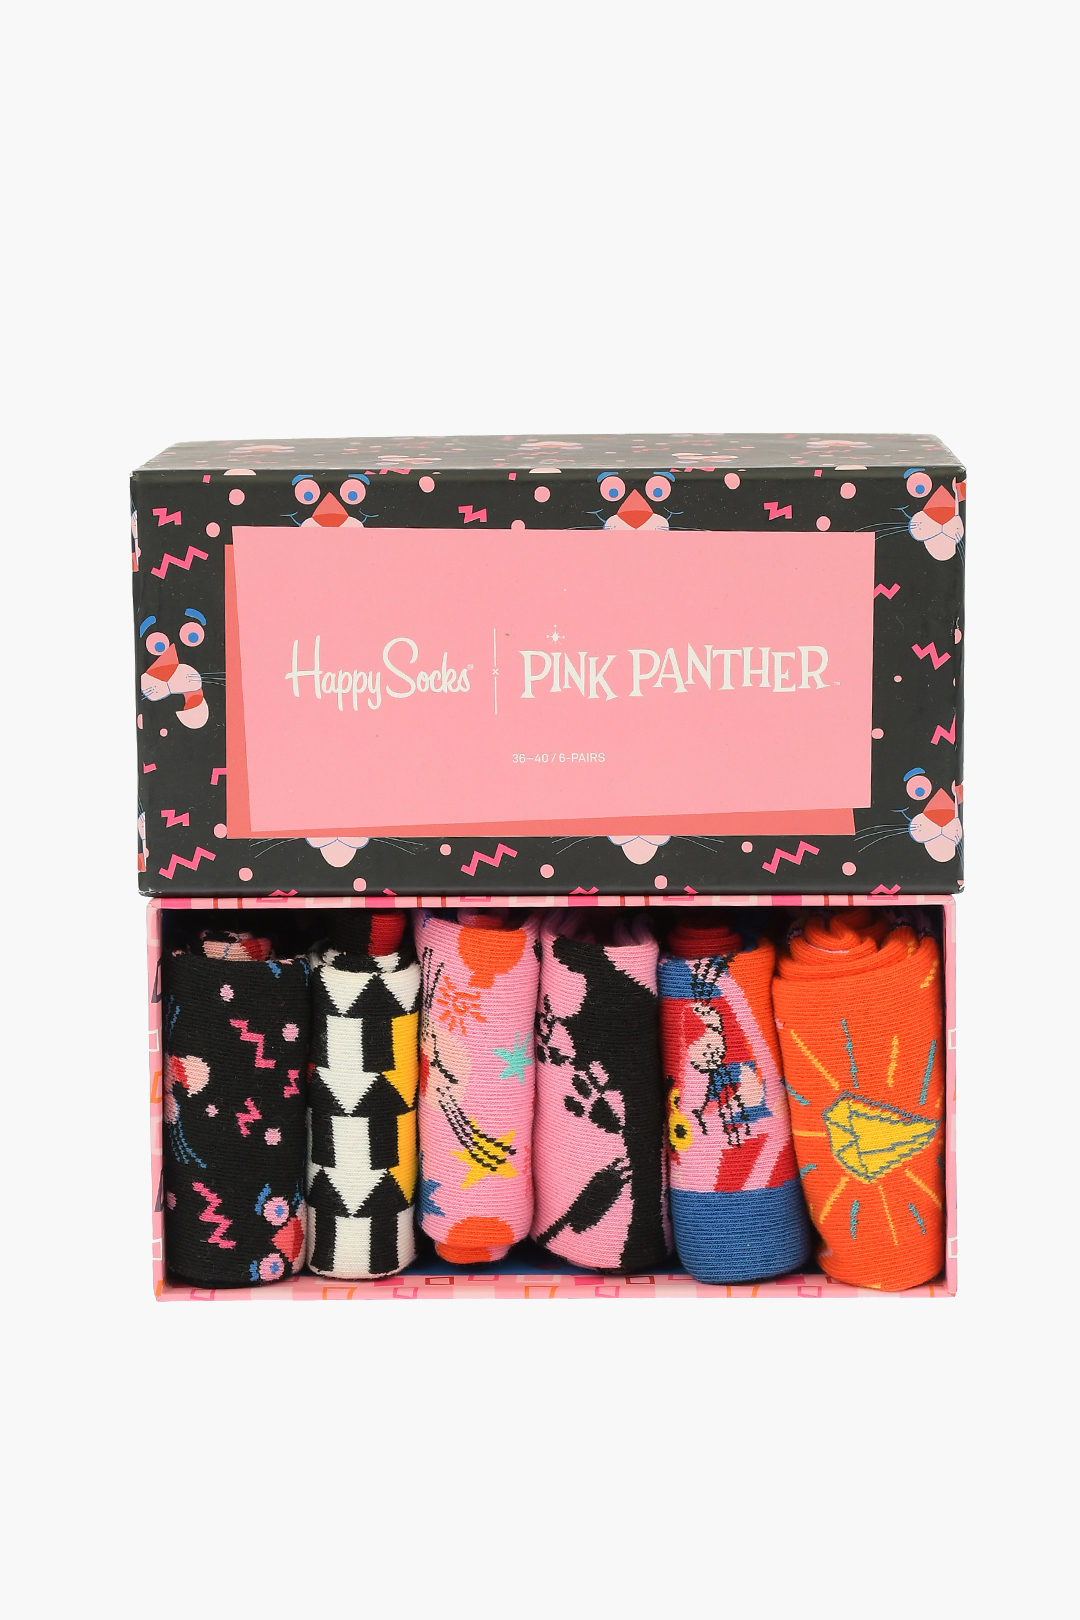 Happy Socks Socken Pink Panther 36-40 Pink Panic Sock schwarz / rosa 41-46